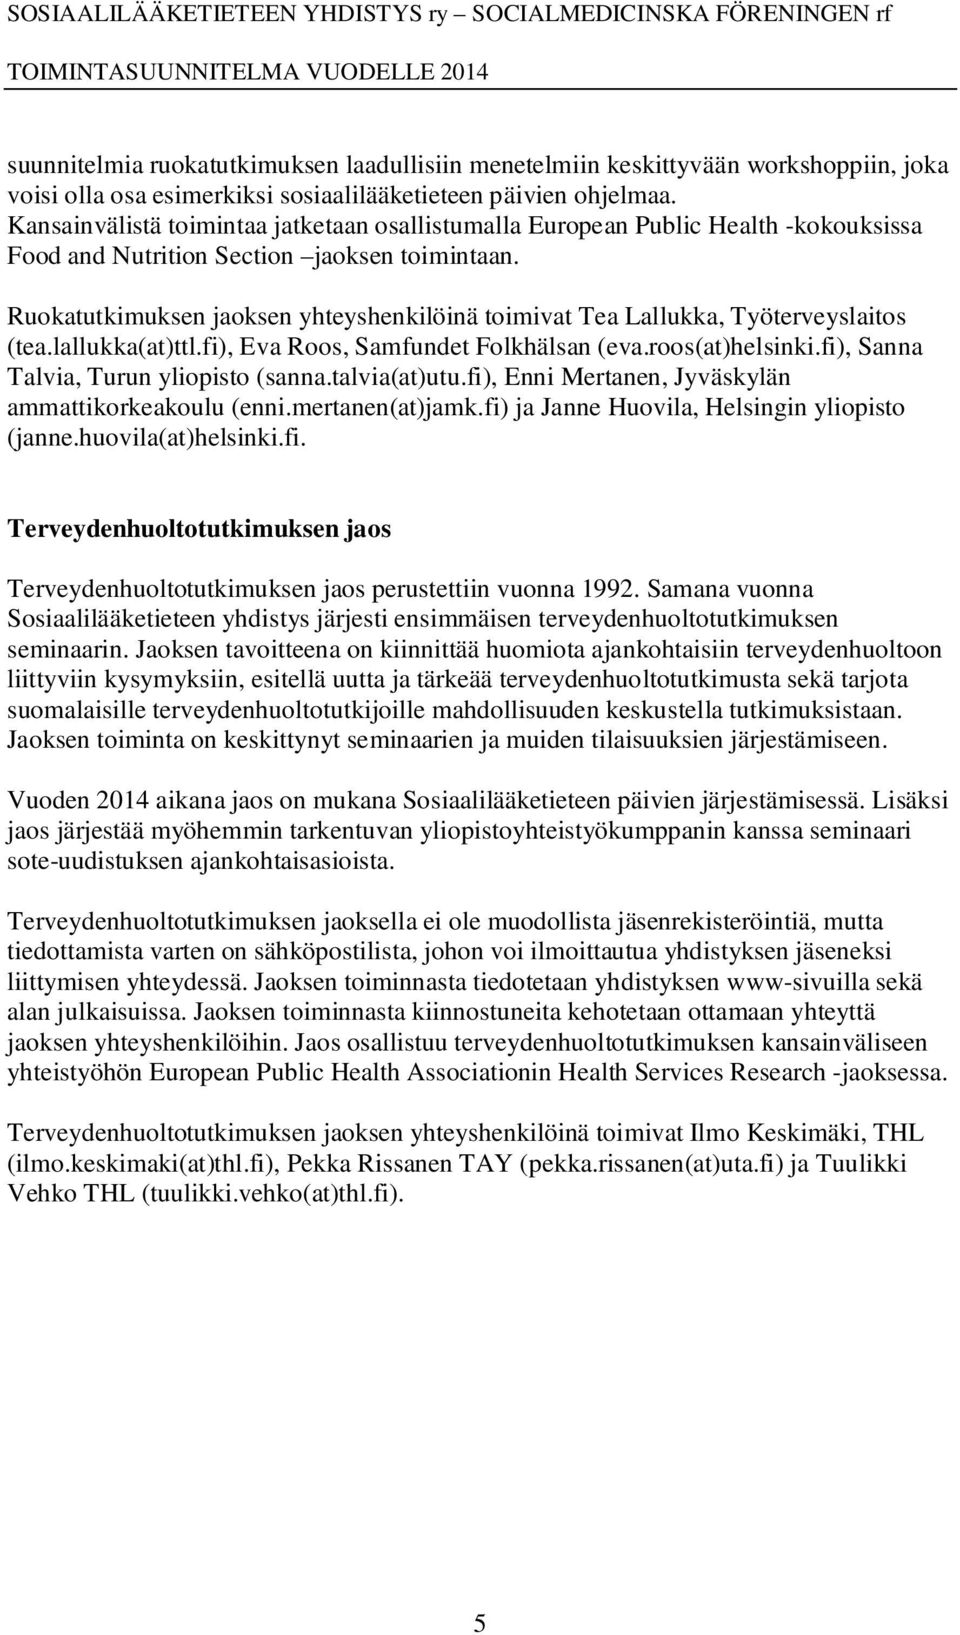 Ruokatutkimuksen jaoksen yhteyshenkilöinä toimivat Tea Lallukka, Työterveyslaitos (tea.lallukka(at)ttl.fi), Eva Roos, Samfundet Folkhälsan (eva.roos(at)helsinki.